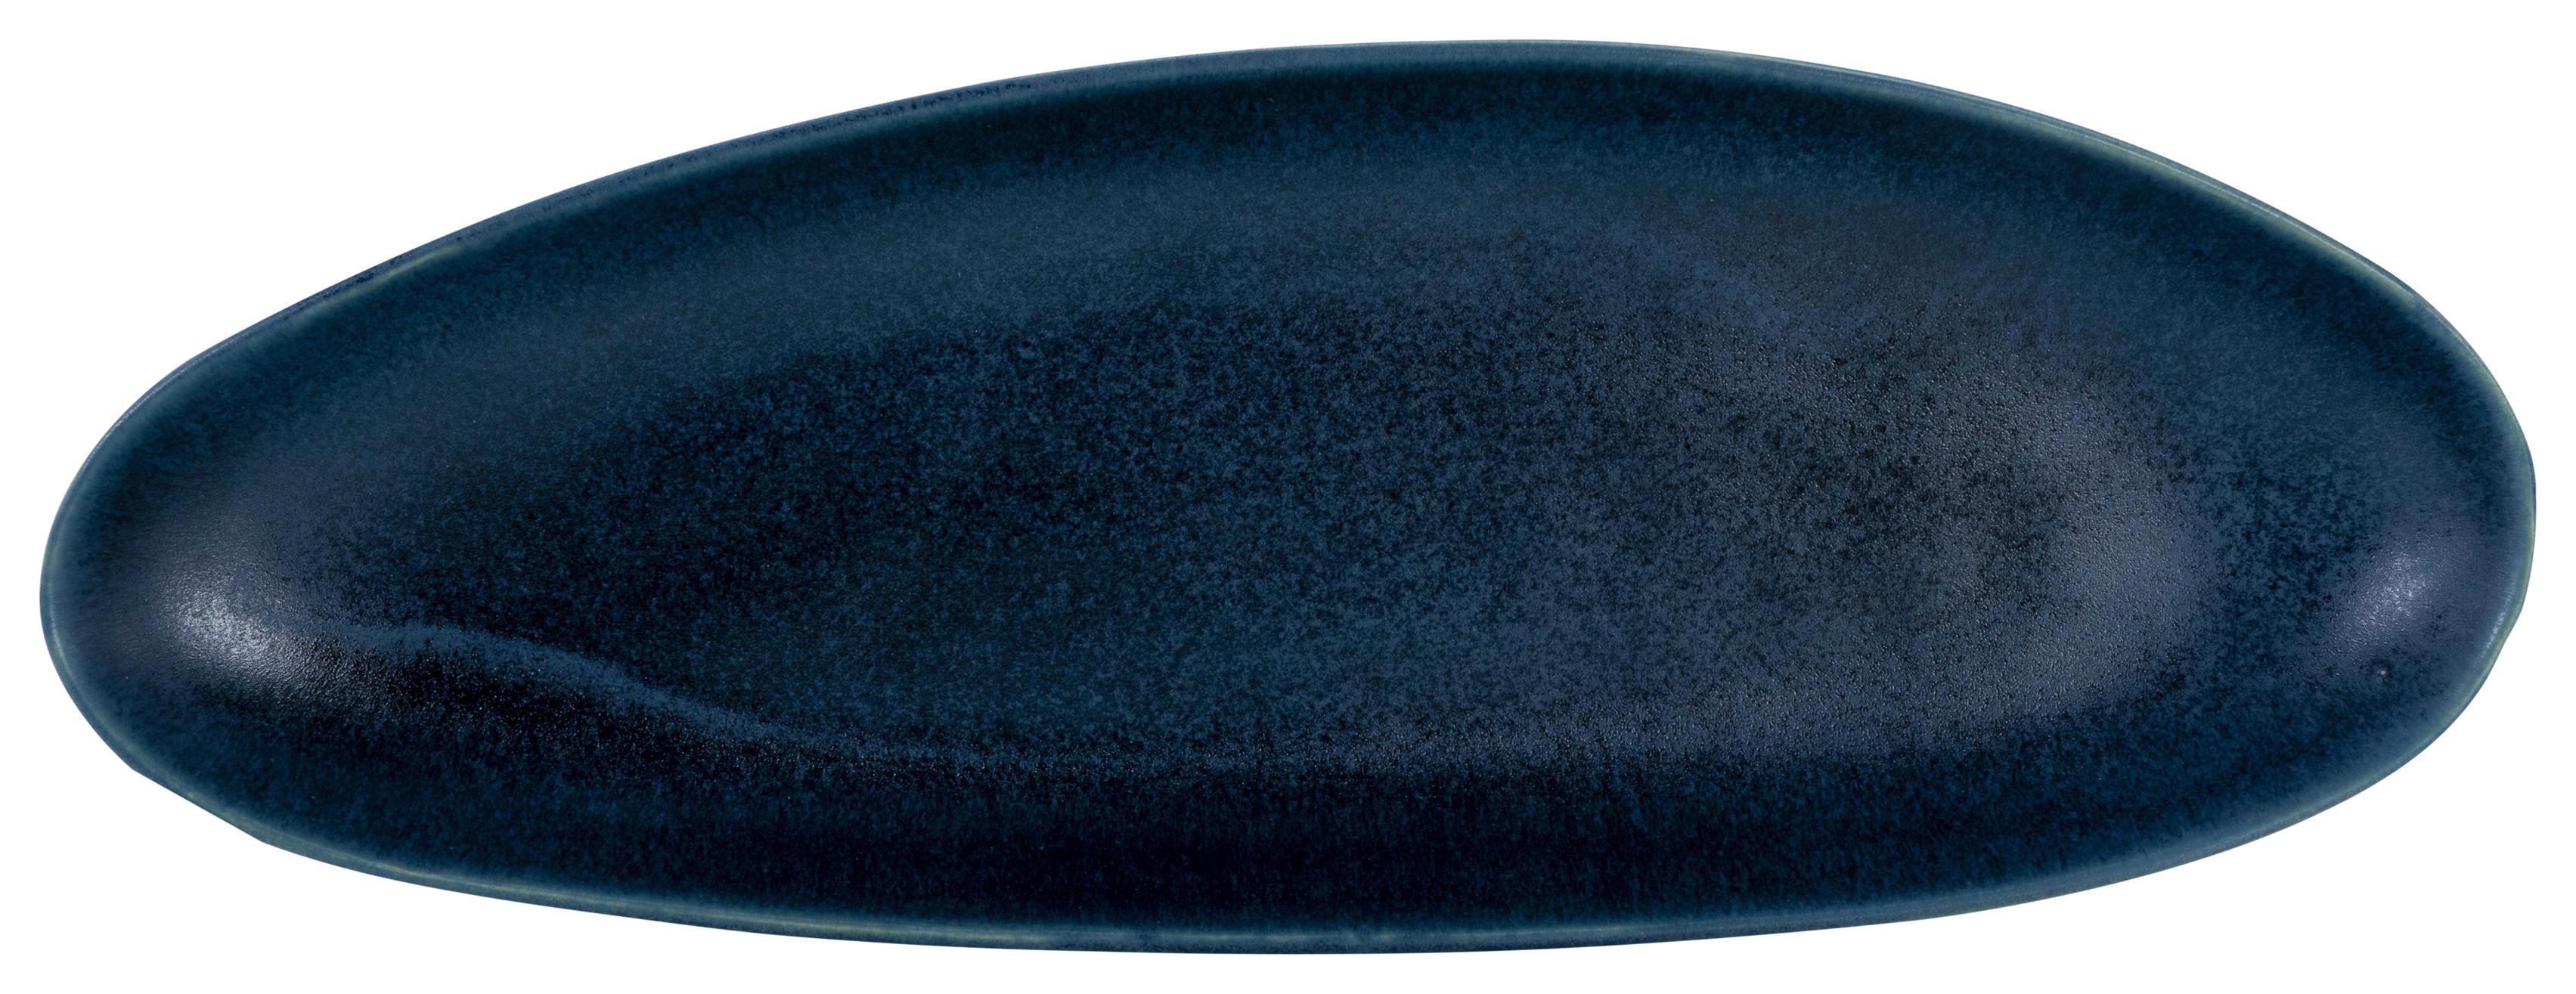 Servírovací Podnos Gourmet-Xl, Ø: 39cm - modrá, Moderní, keramika (39/22/4cm) - Premium Living